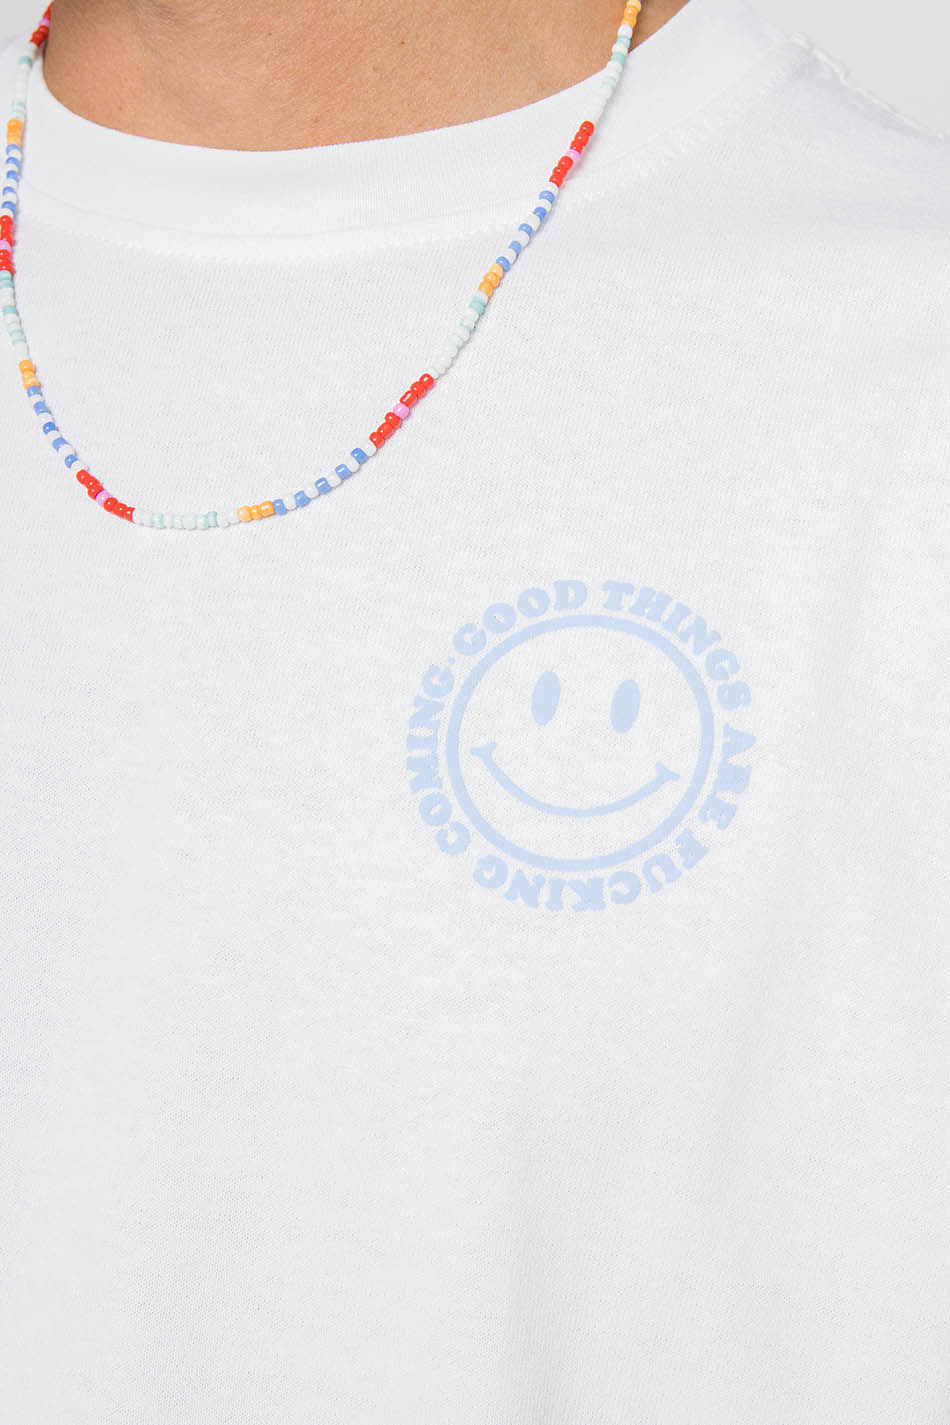 Camiseta Smile Organic